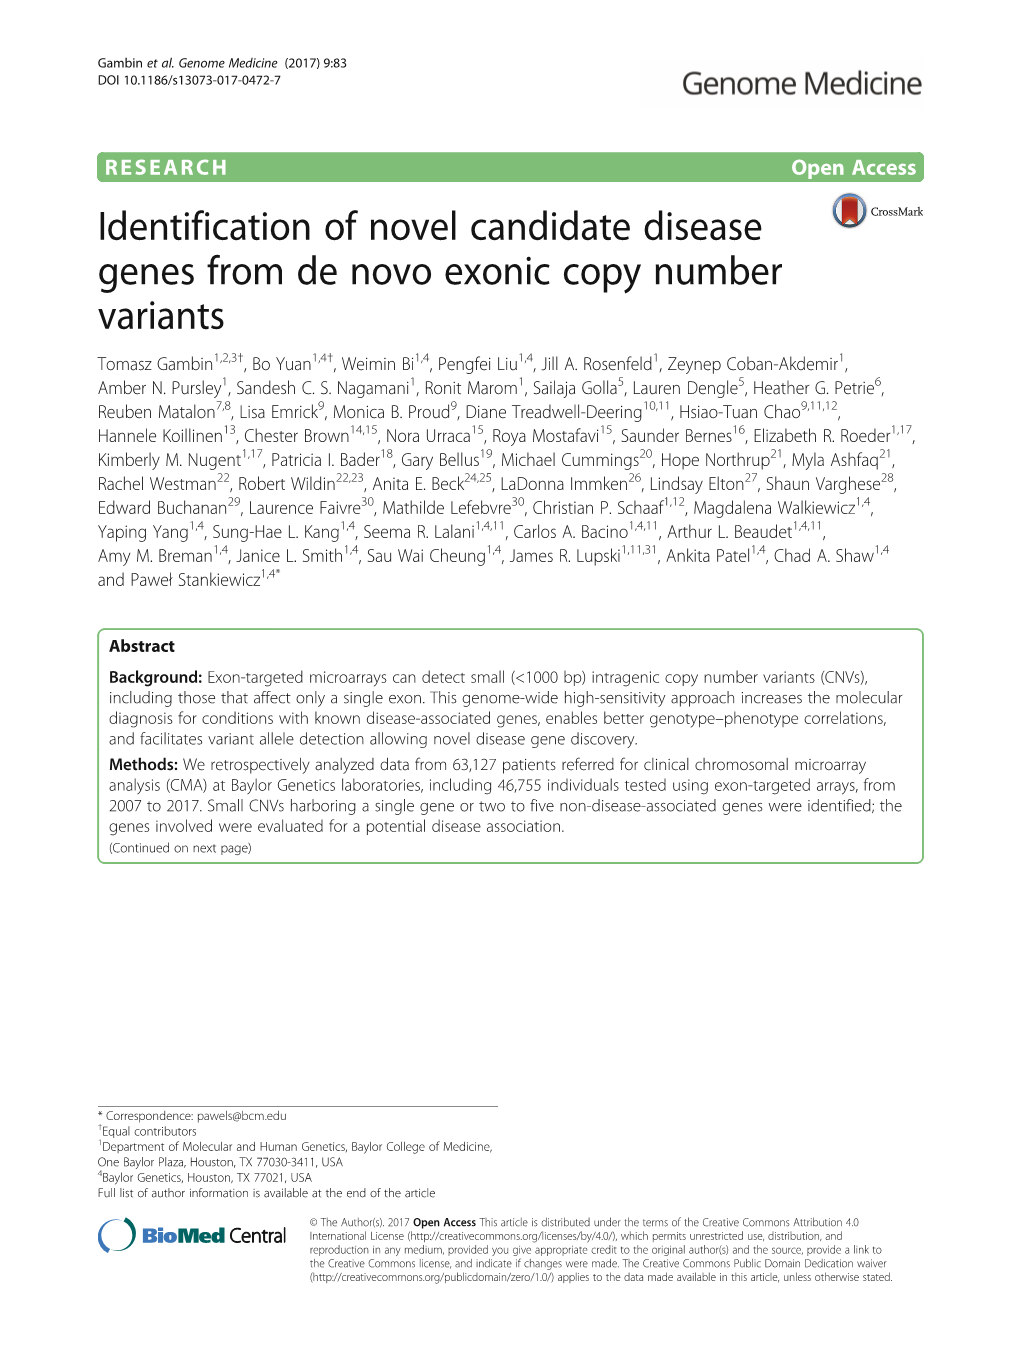 Identification of Novel Candidate Disease Genes from De Novo Exonic Copy Number Variants Tomasz Gambin1,2,3†, Bo Yuan1,4†, Weimin Bi1,4, Pengfei Liu1,4, Jill A